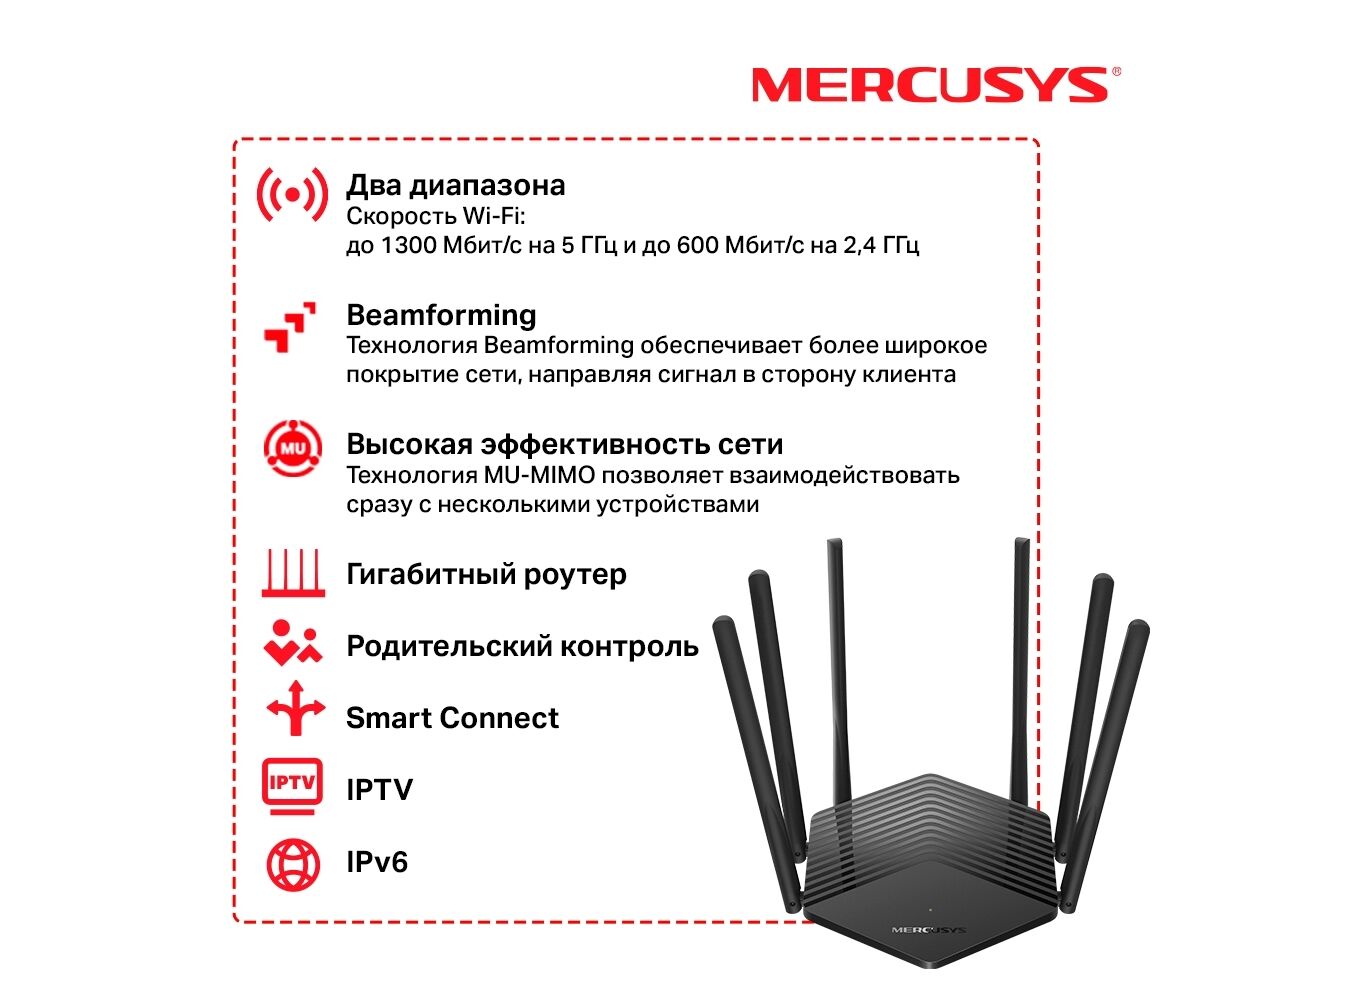 Mercusys support. Wi-Fi роутер Mercusys mr50g. Роутер Mercusys mr50g Gigabit ac1900 двухдиапазонный. Mercusys mr50g, ac1900. Роутер mr50g Mercusys индикаторы.